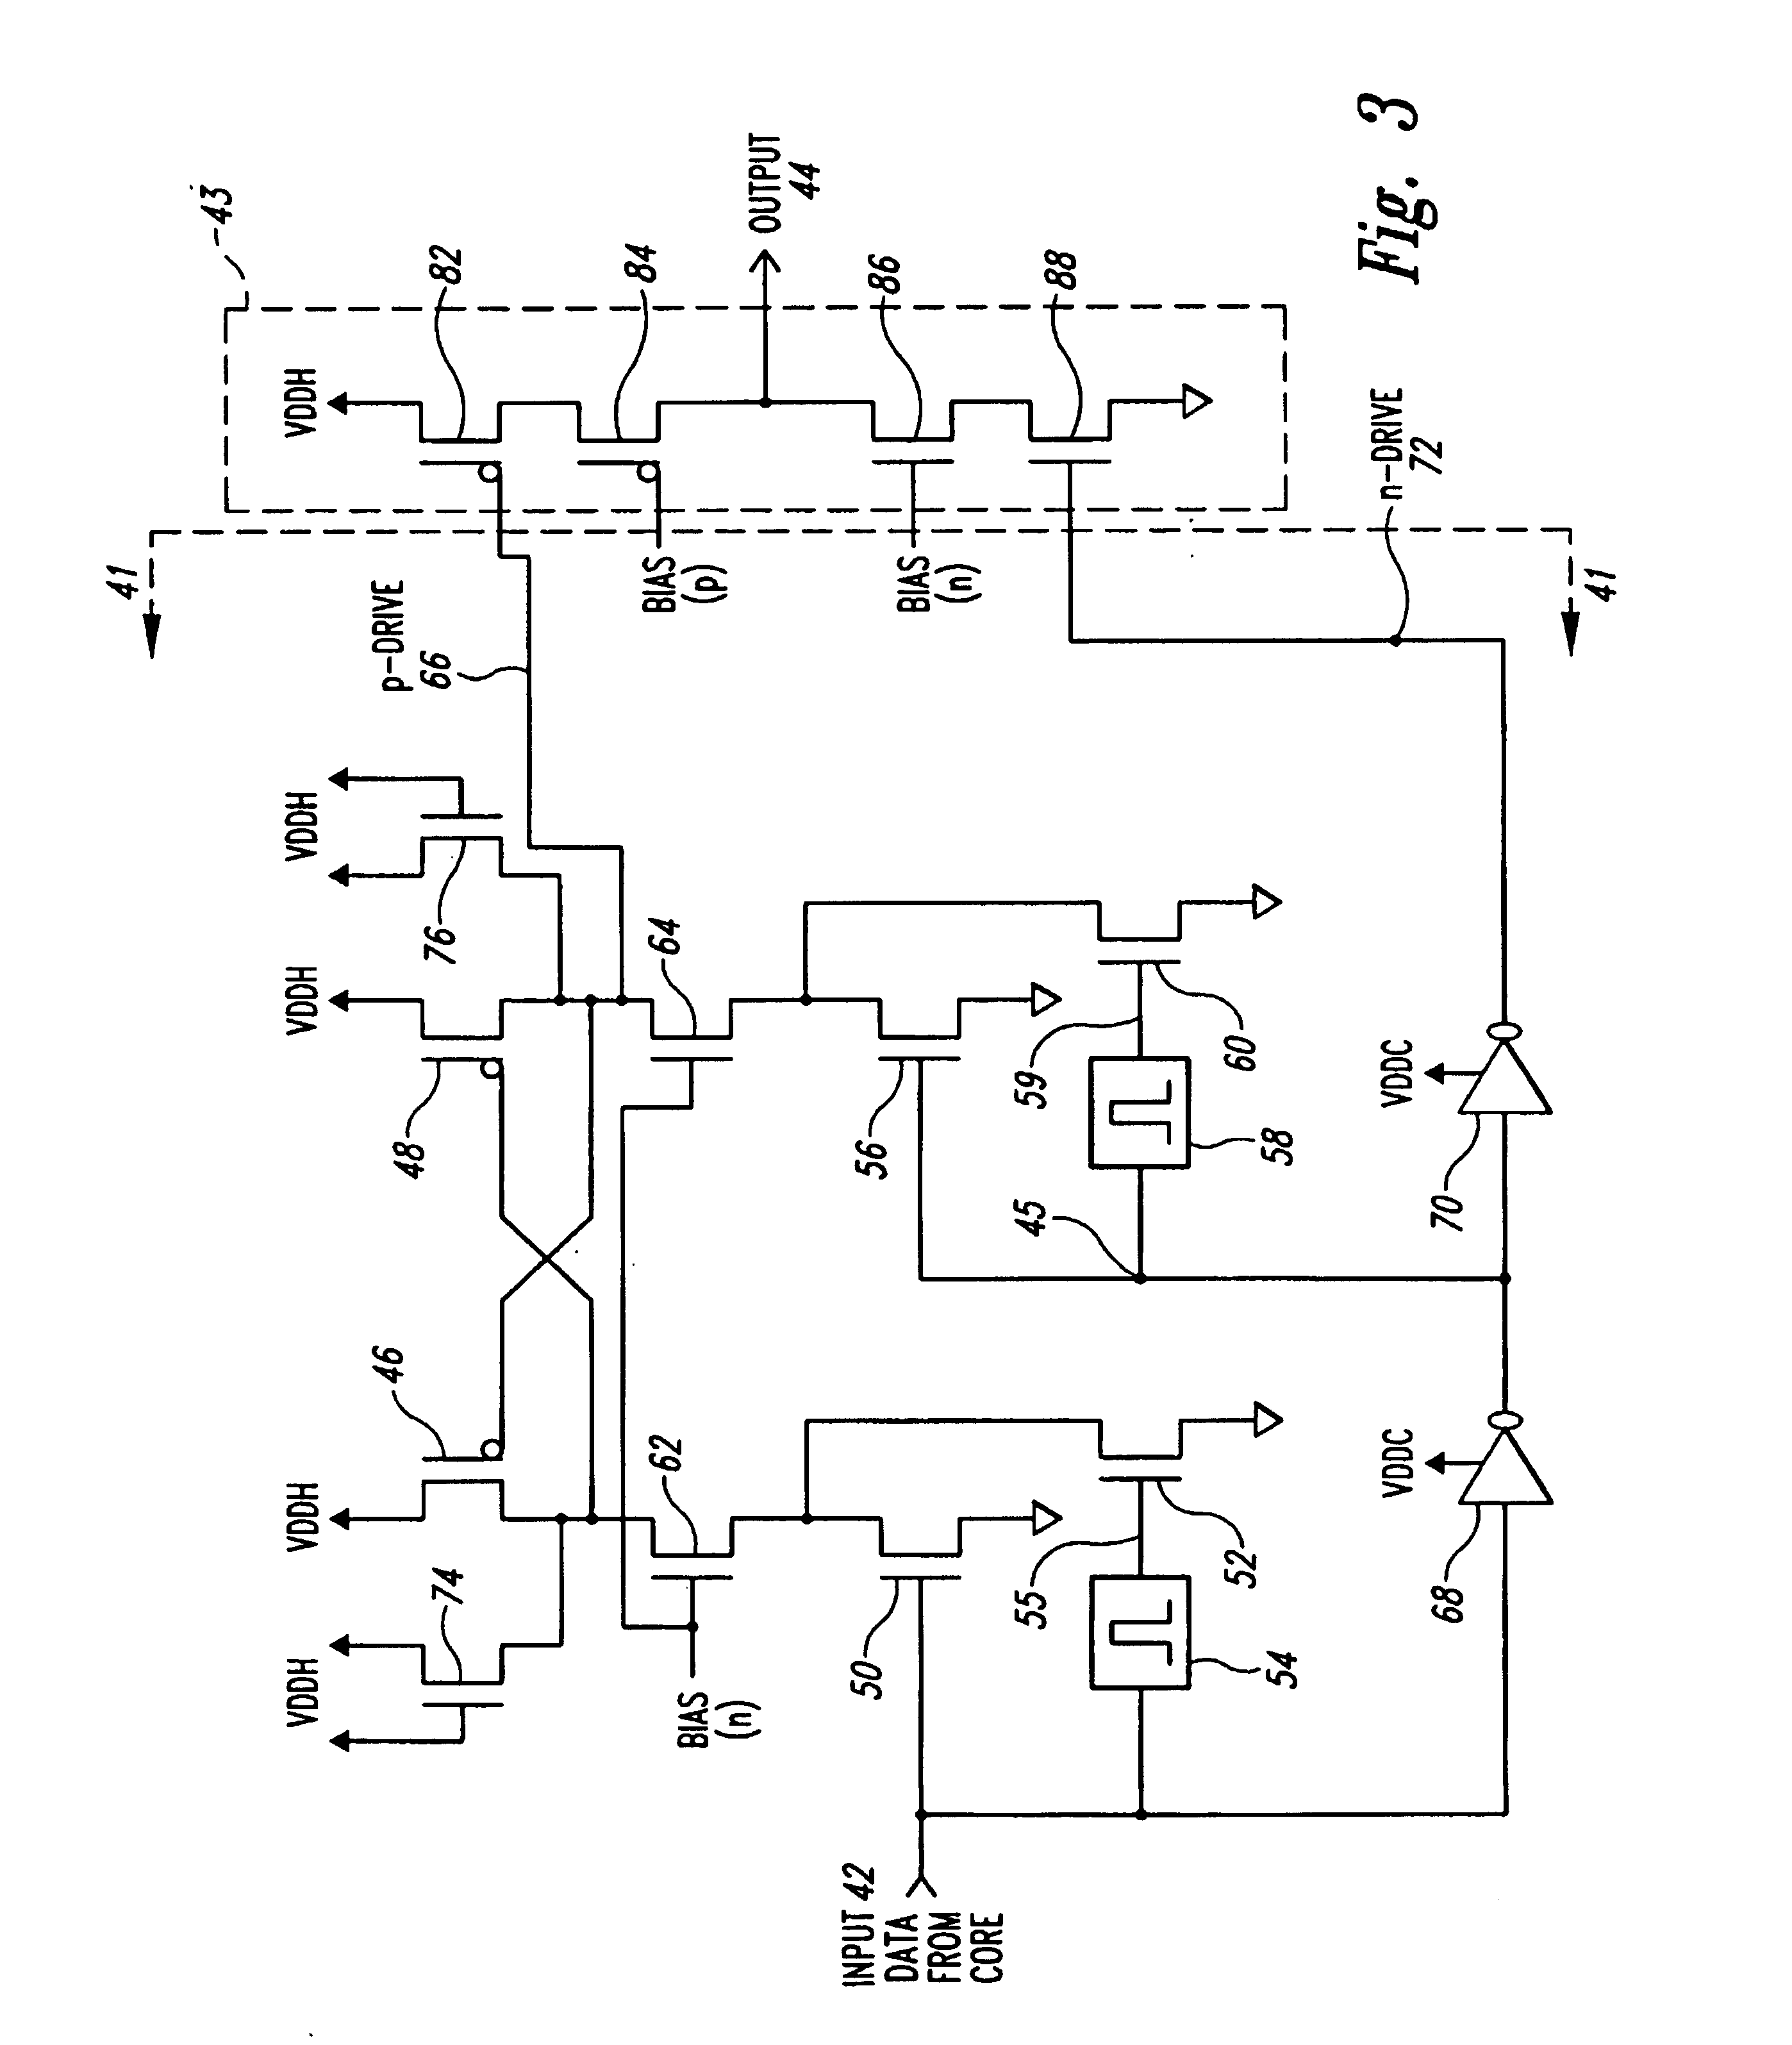 Voltage translator circuit formed using low voltage transistors